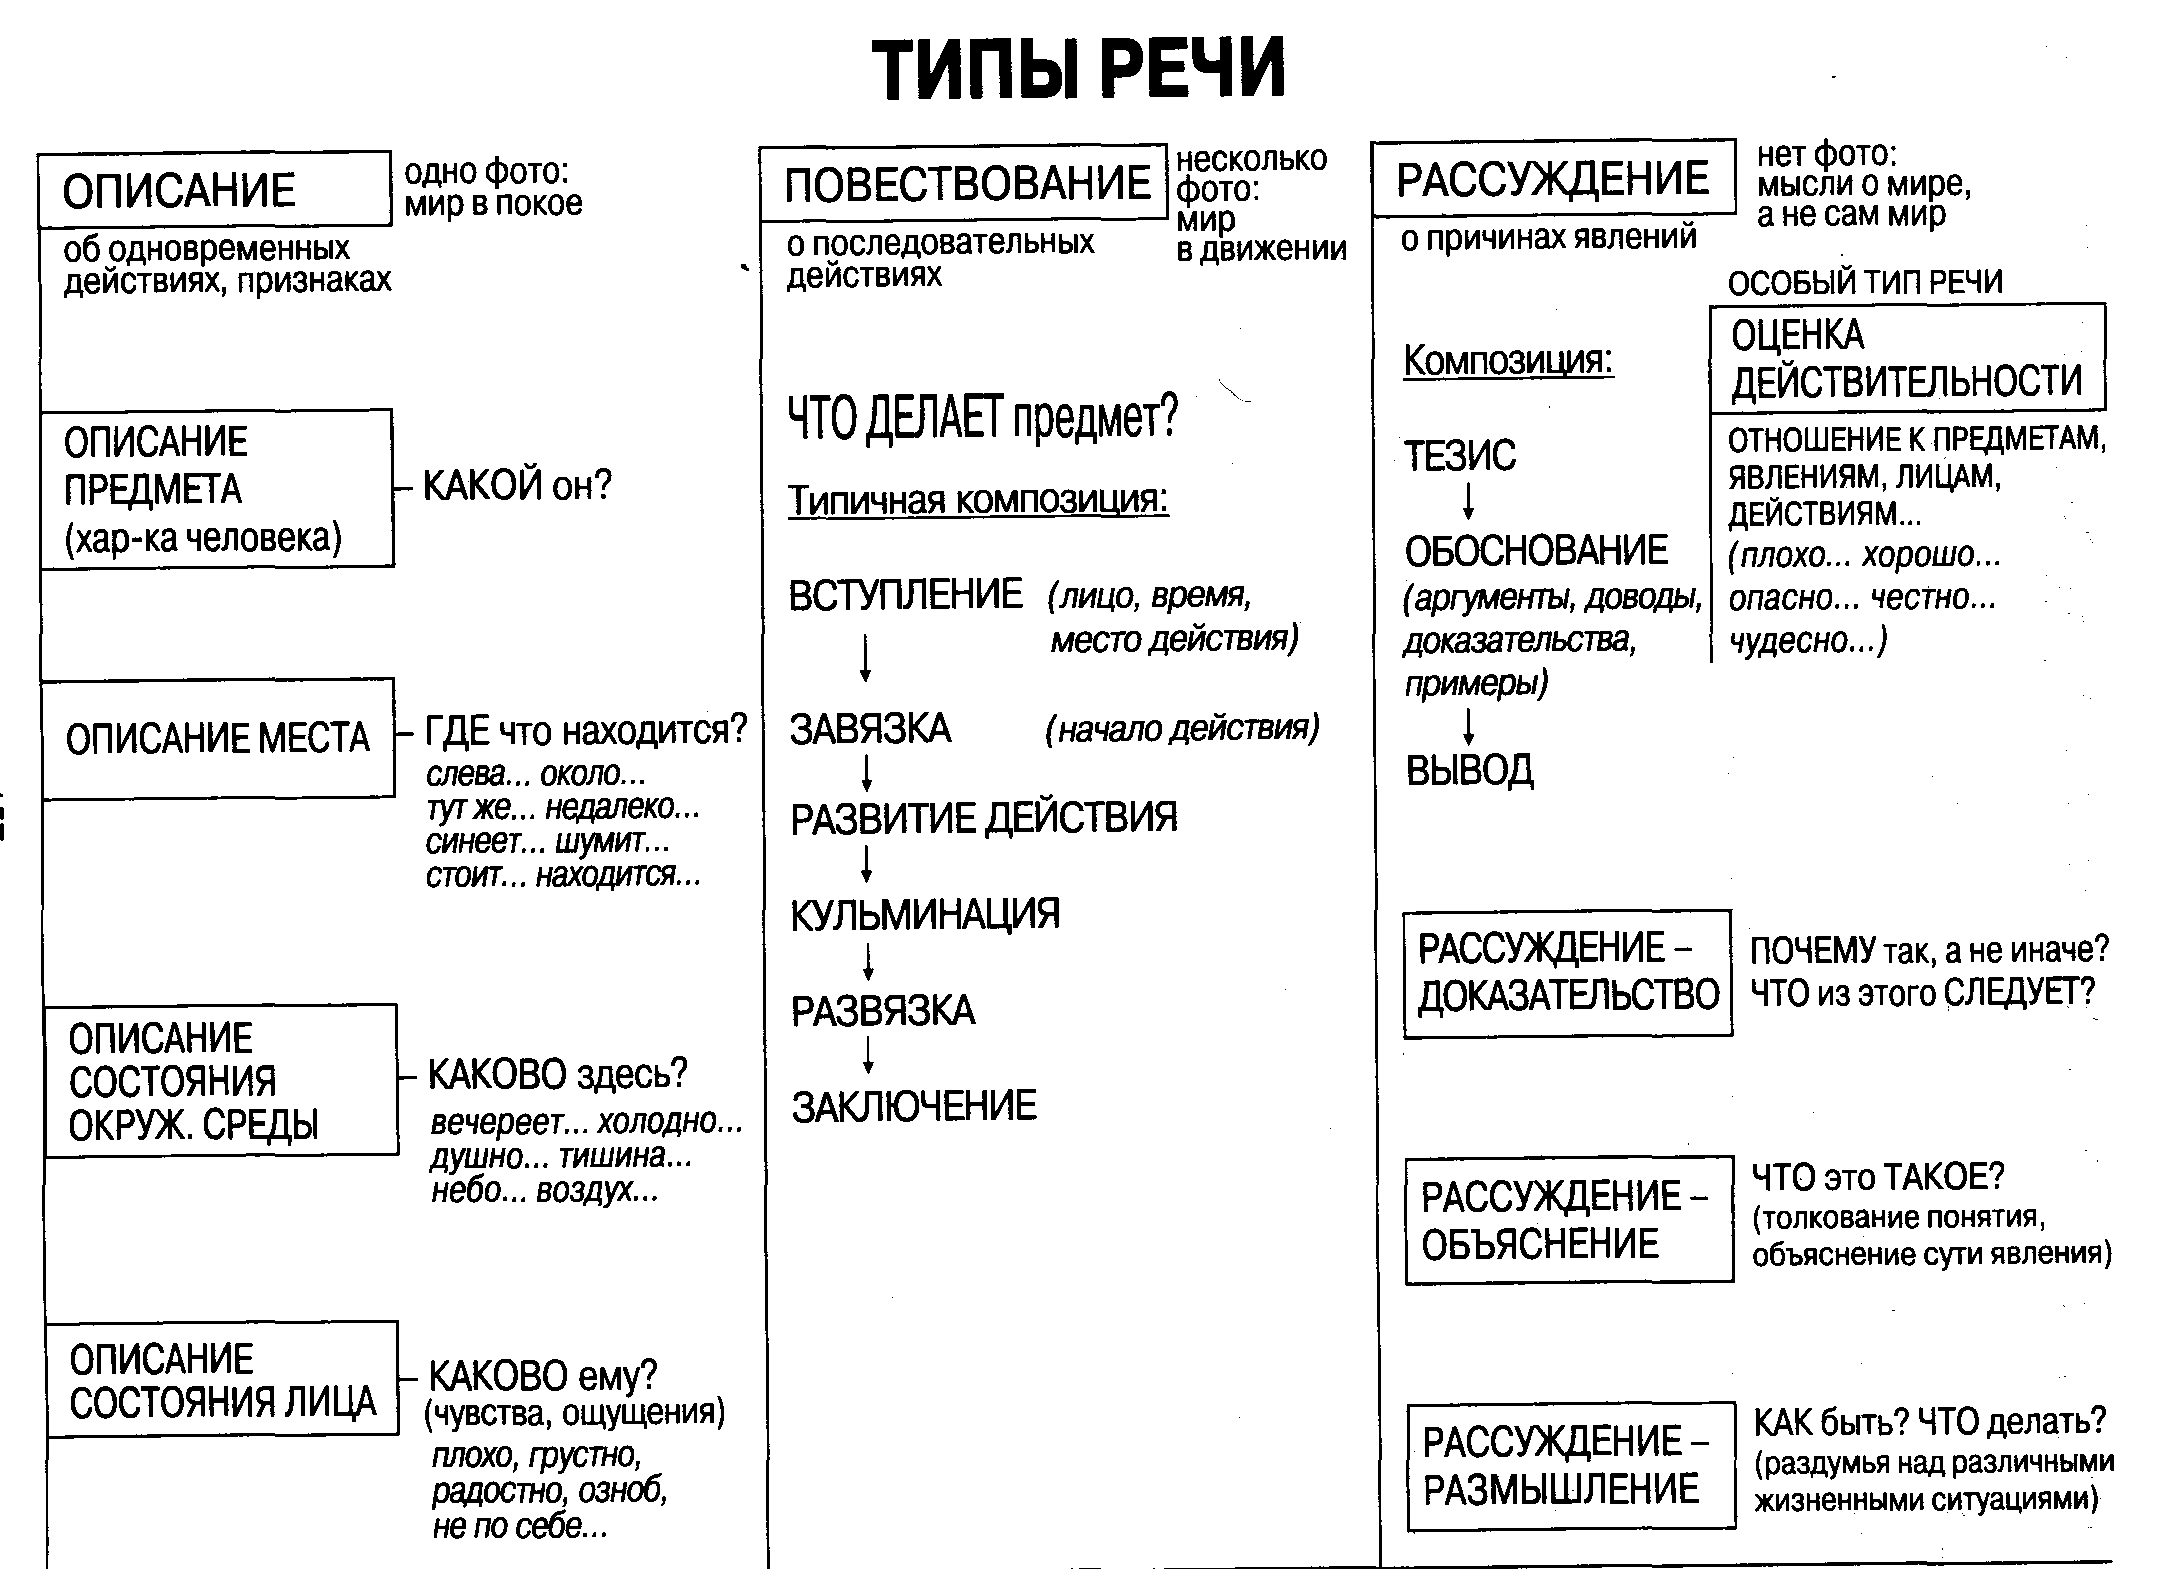 Виды и типы речи в русском языке